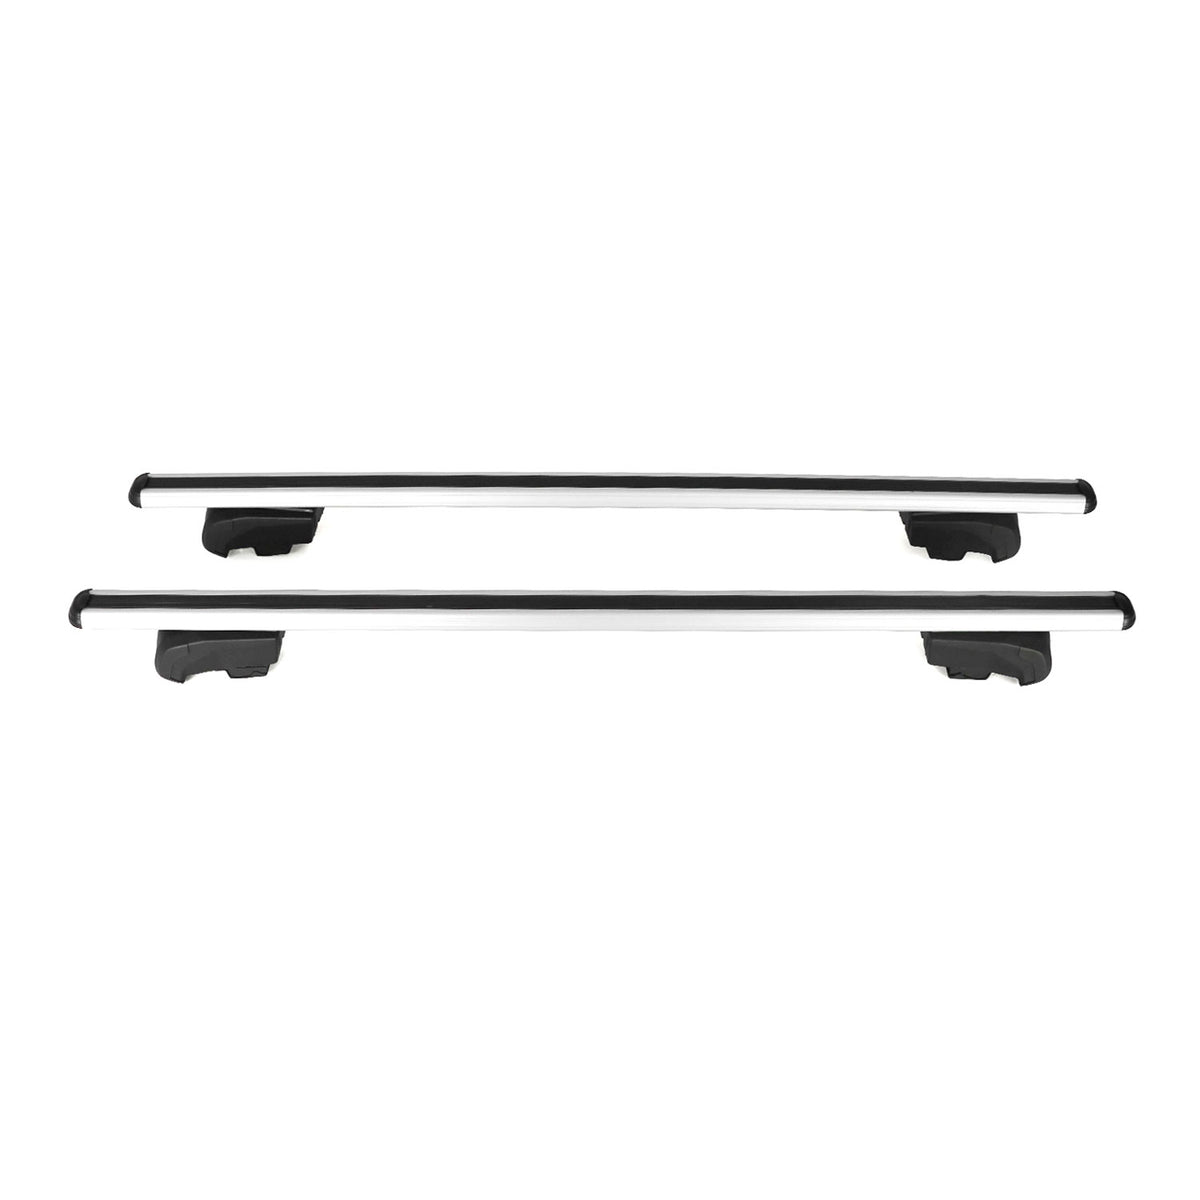 Roof rack luggage rack for Audi Q5 8R 2008-2017 basic rack TÜV ABE aluminum gray 2x